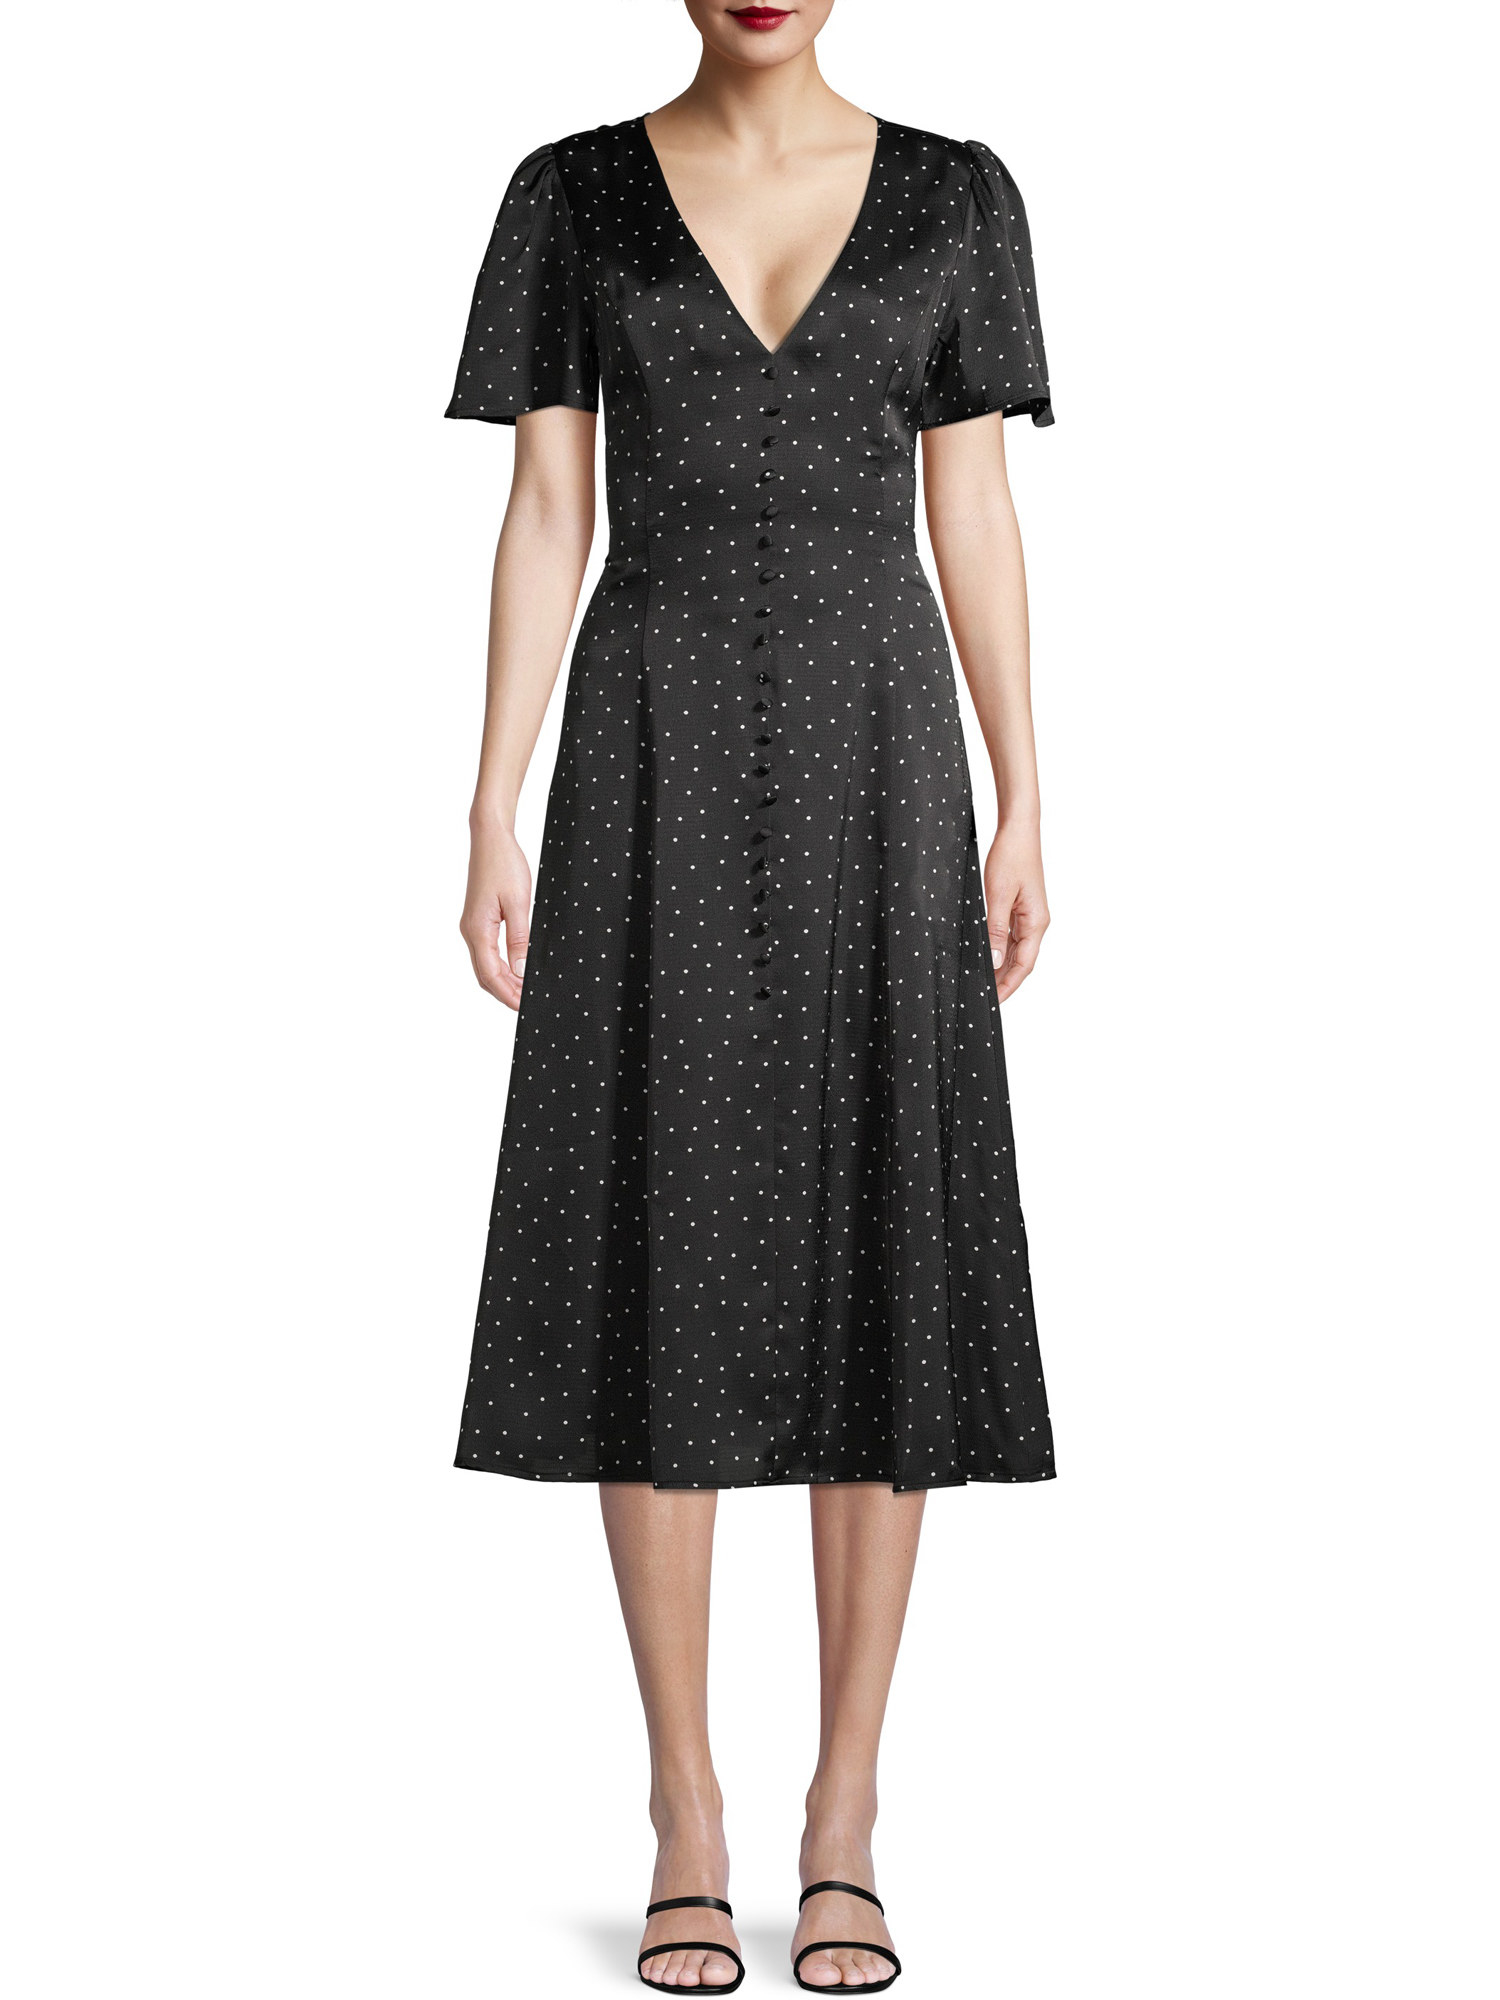 Model wearing black knee-length polka-dot dress 